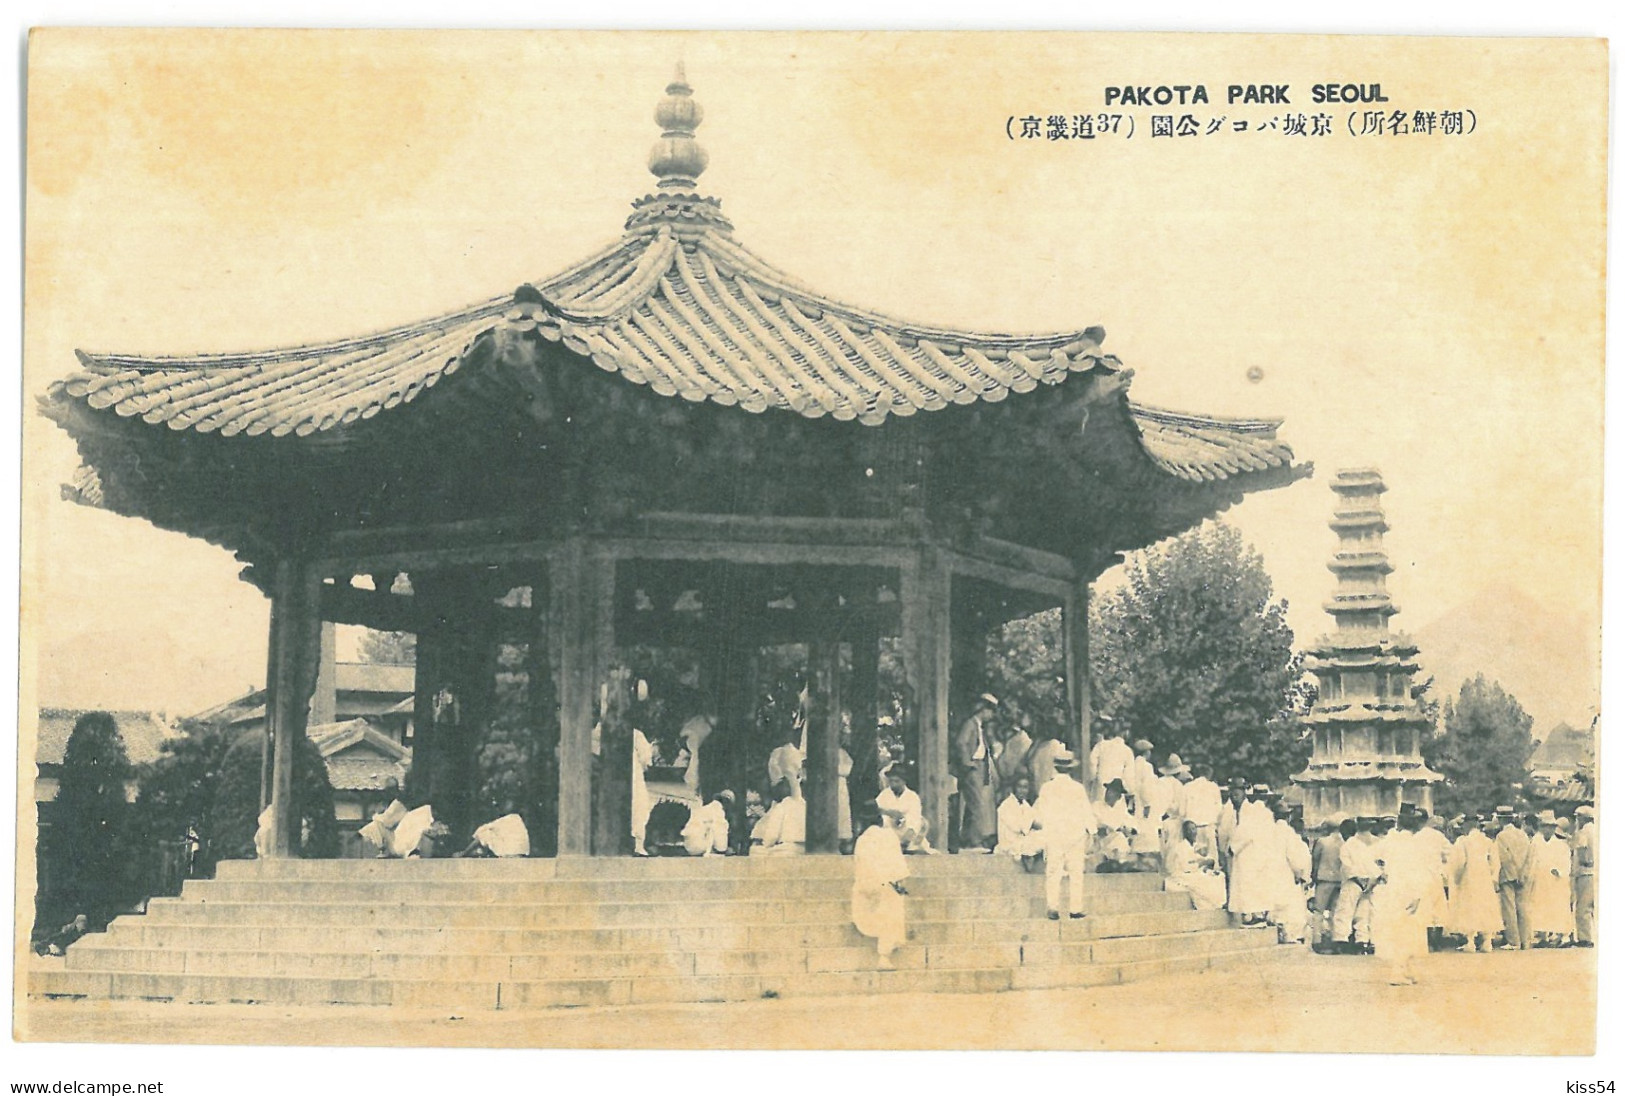 KOR 4 - 17816 SEOUL, Pakota Park, Korea - Old Postcard - Unused - Corée Du Sud